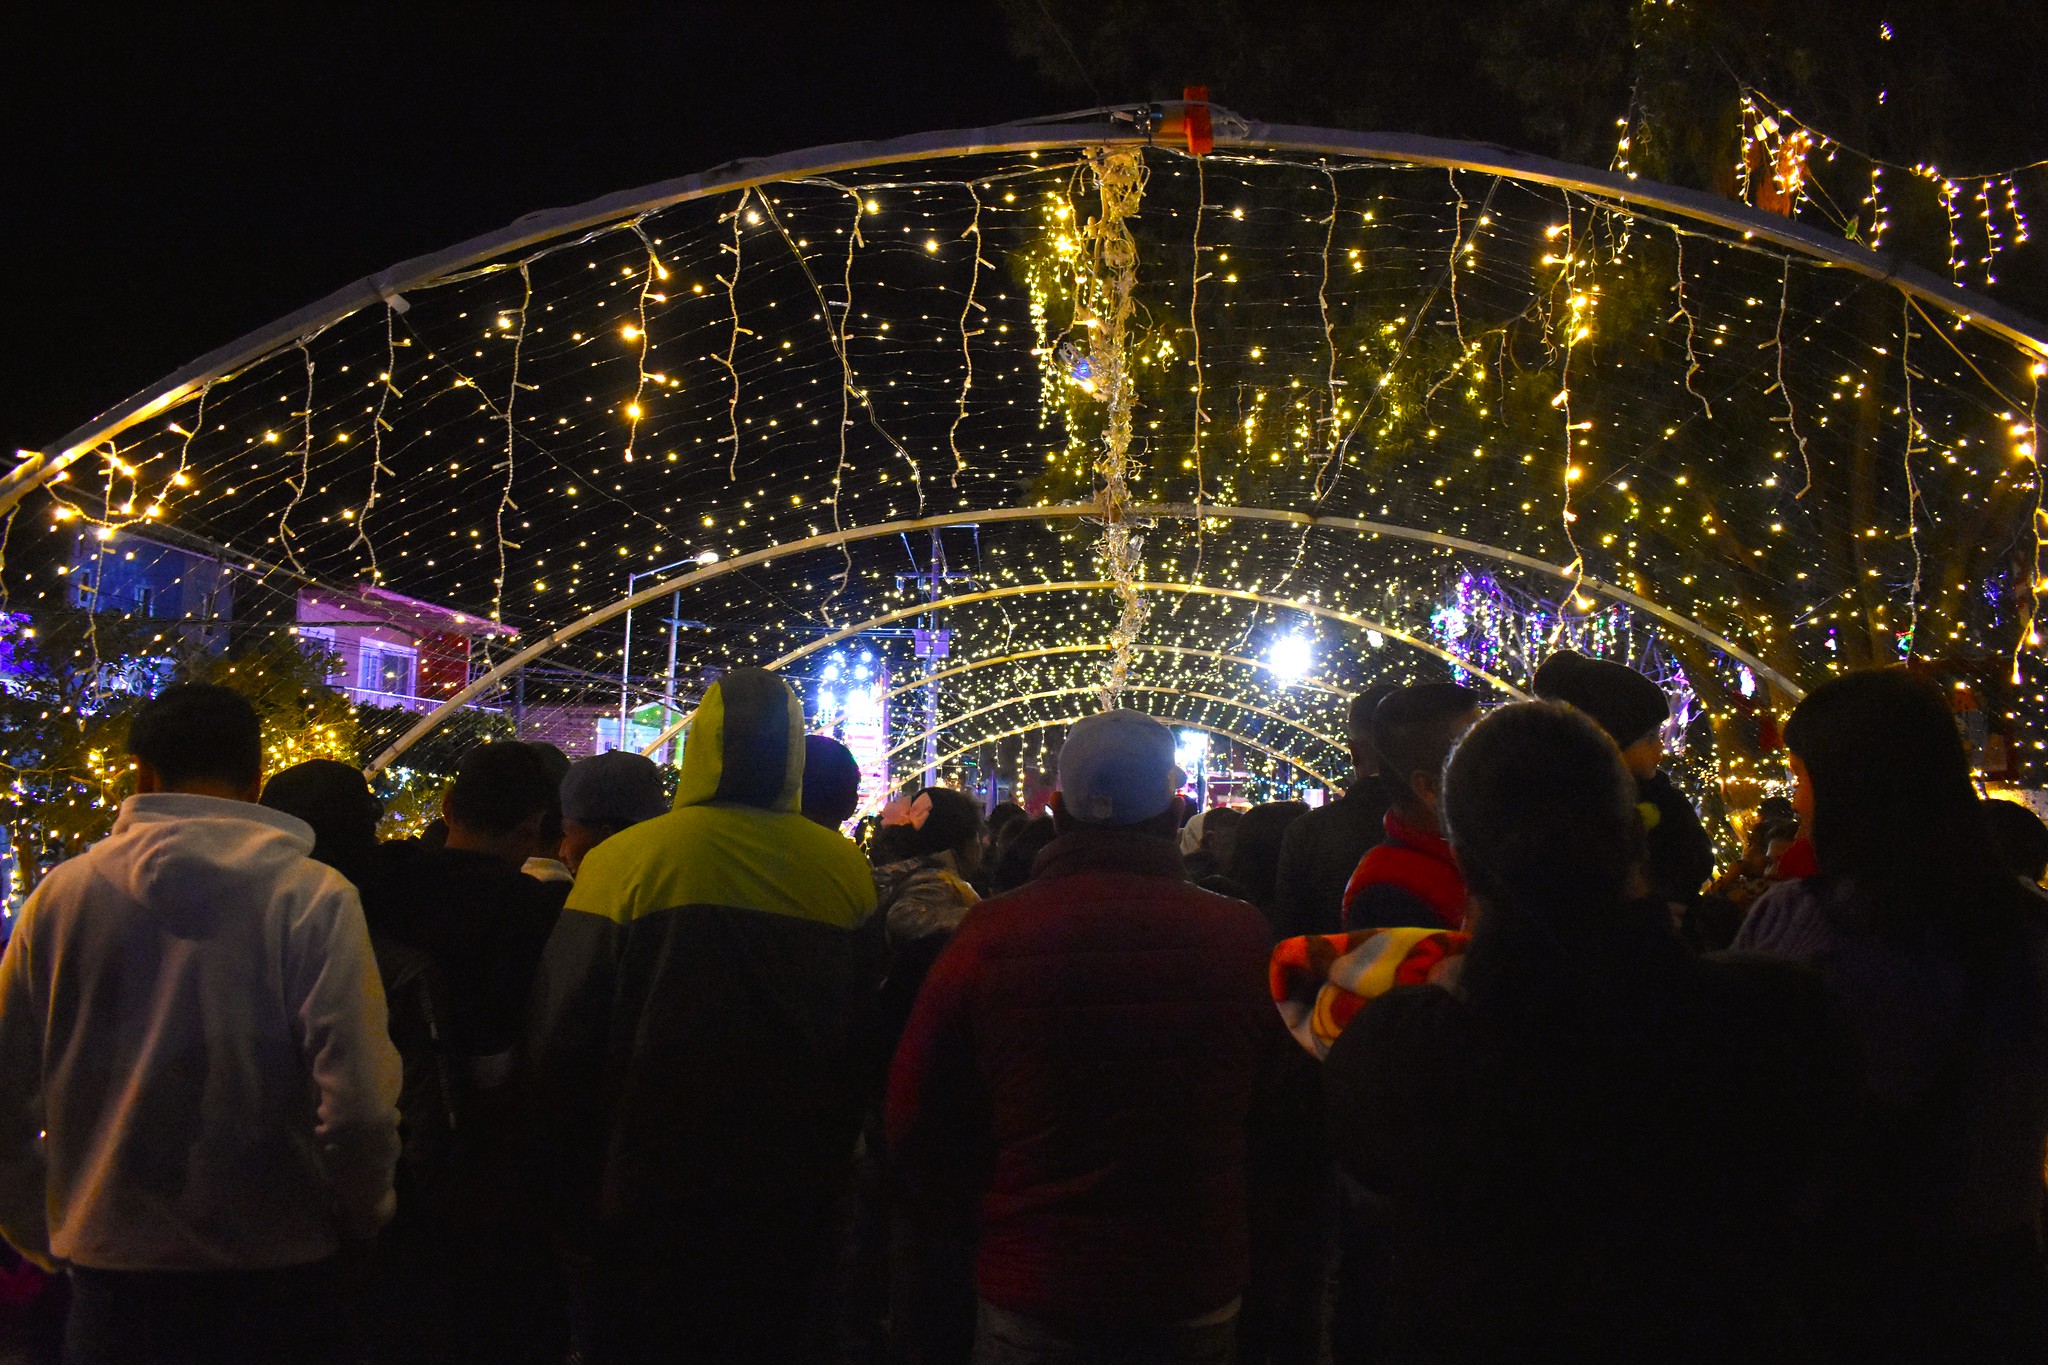 La magia de la navidad ya envolvió al poblado de Cuexcomatitlán, Tlajomulco, gracias a los vecinos que se organizaron para convertir la plaza principal en una villa navideña.